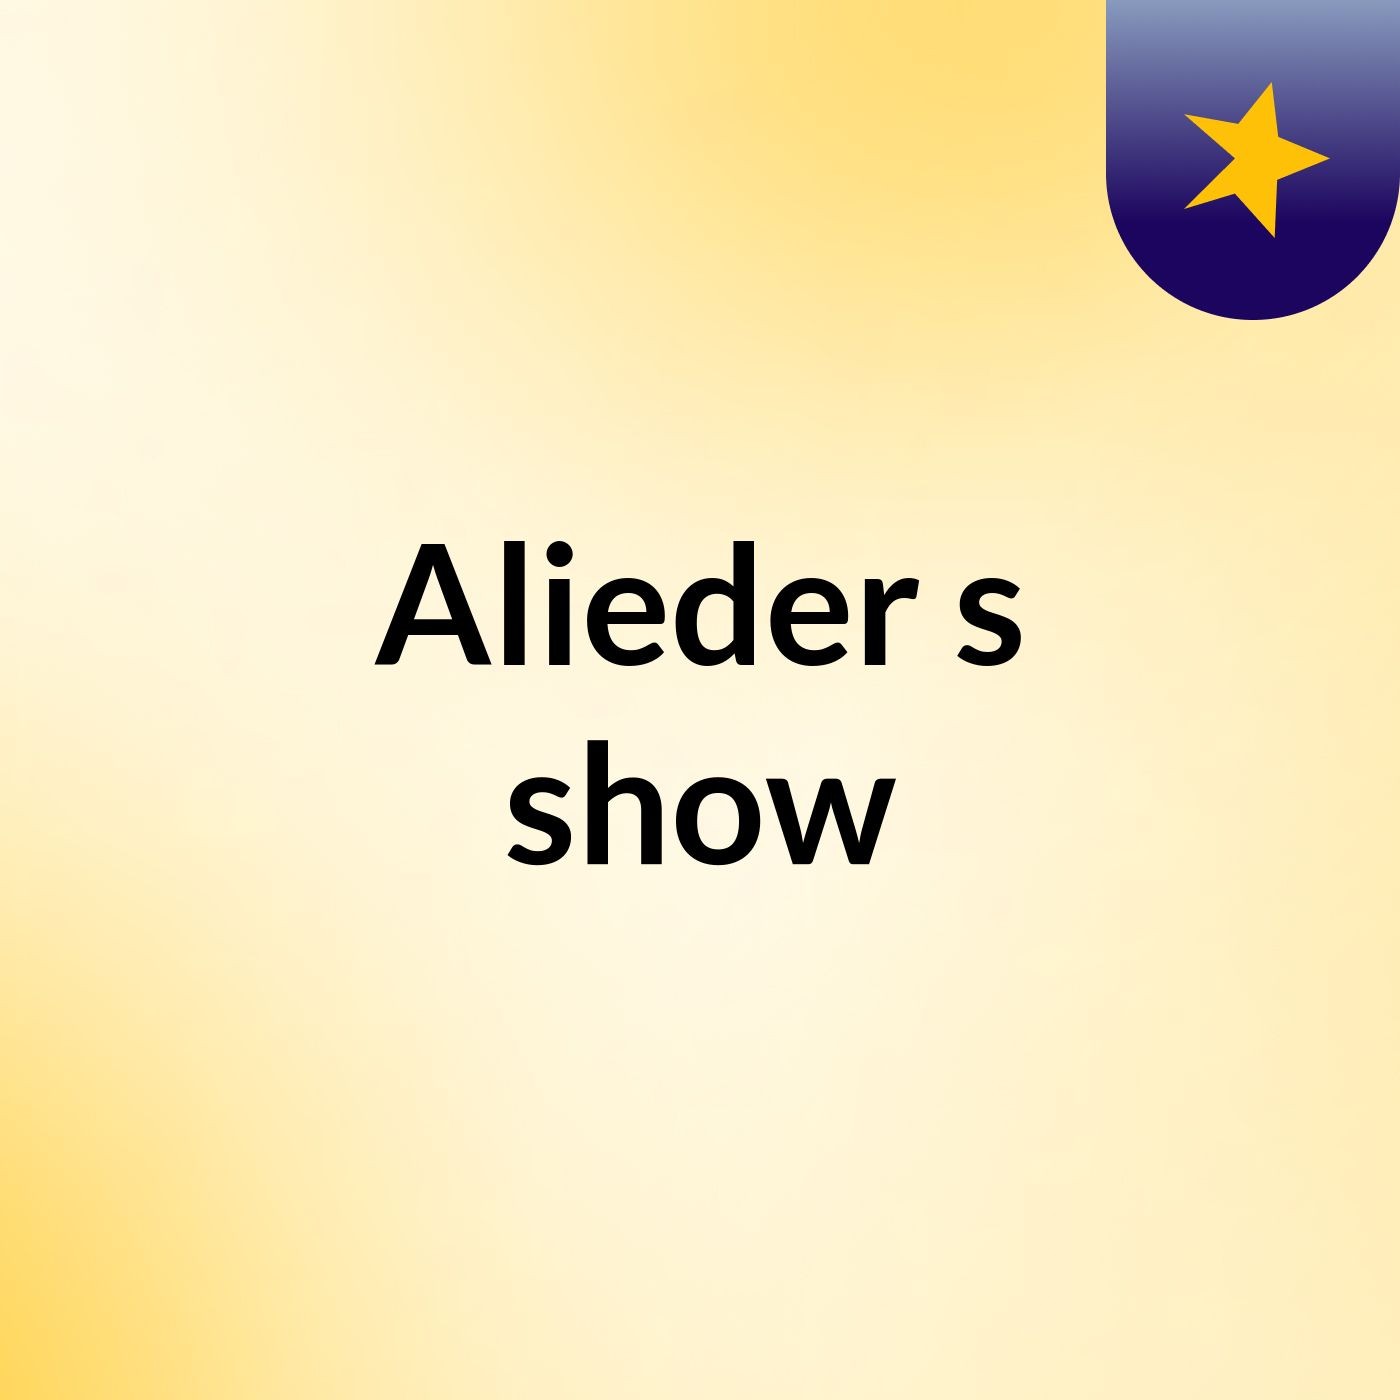 Alieder's show